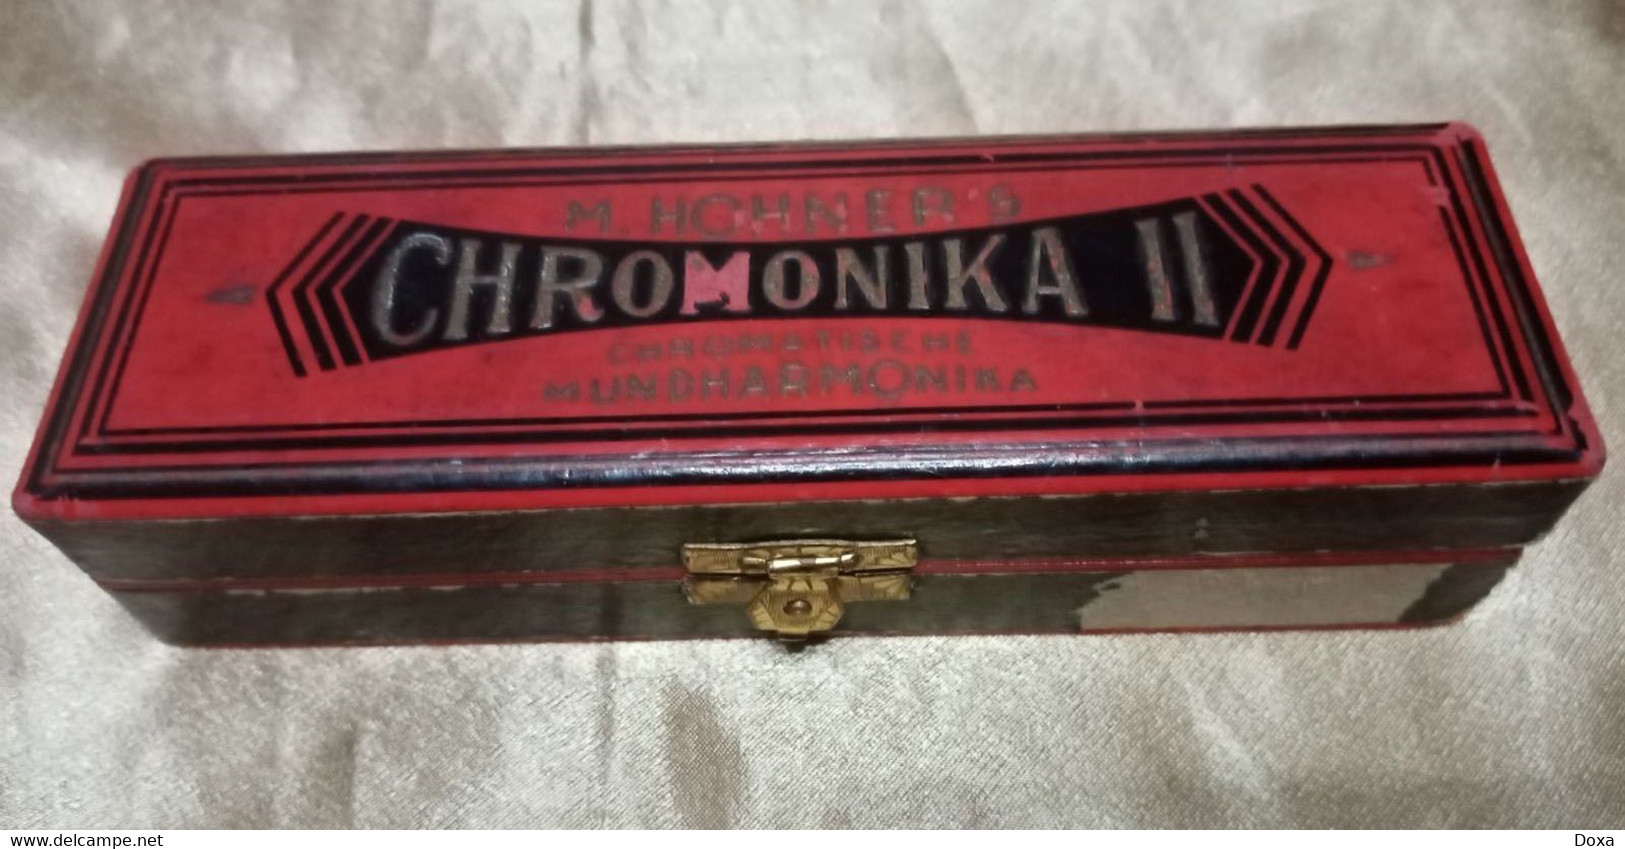 Harmonica Chromonica II Mundharmonika - Musical Instruments